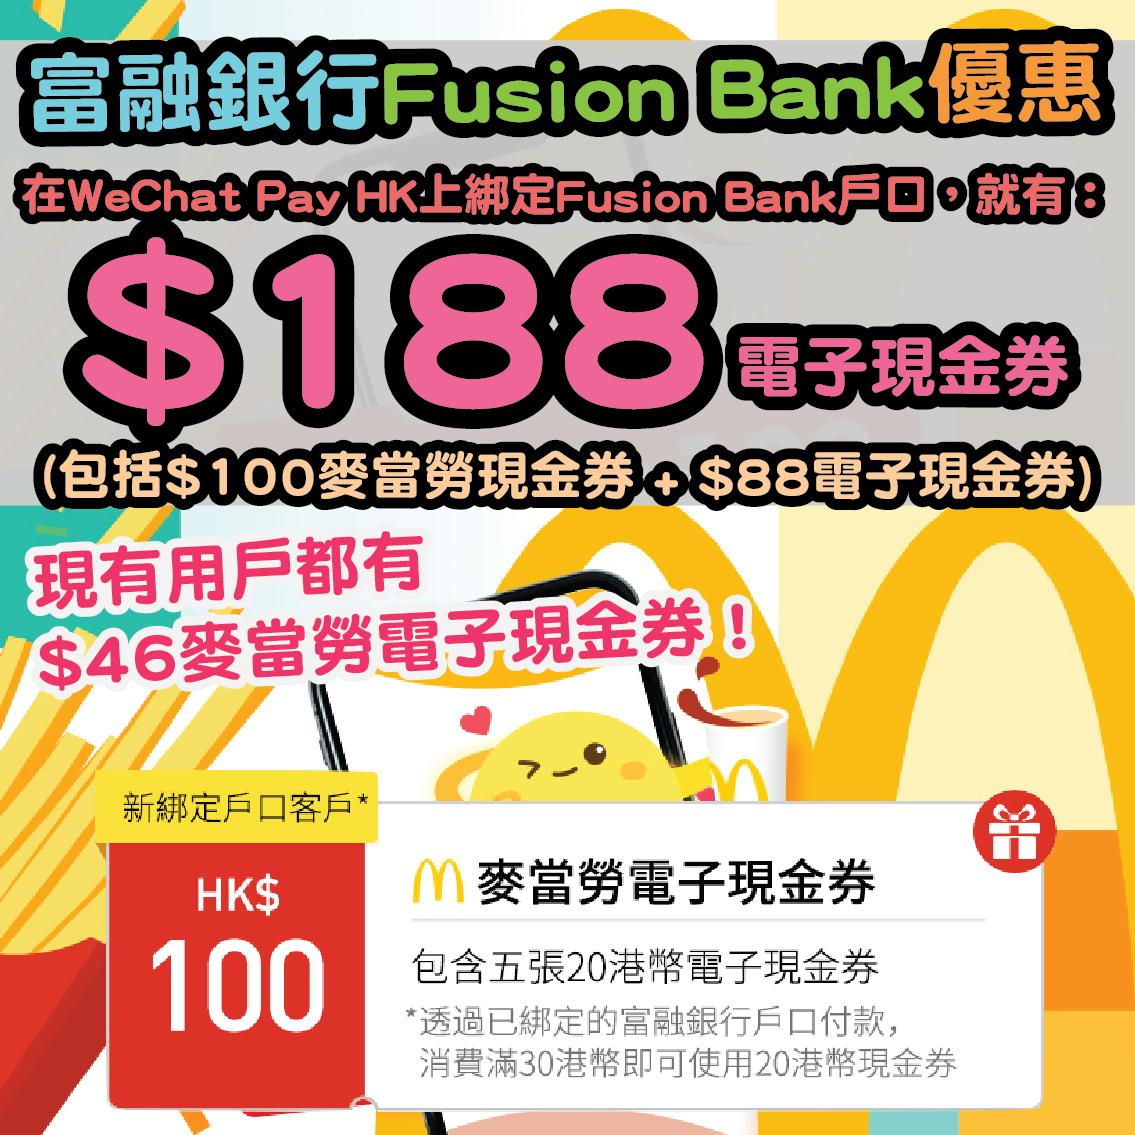 【富融銀行Fusion Bank開戶優惠】新用戶喺WeChat Pay HK上綁定Fusion Bank 戶口，就有$188電子現金券 (包括$100麥當勞現金券 + $88電子現金券)*；現有用戶都有$46麥當勞電子現金券*！另外仲有其他外匯買賣及存款現金回贈優惠！^